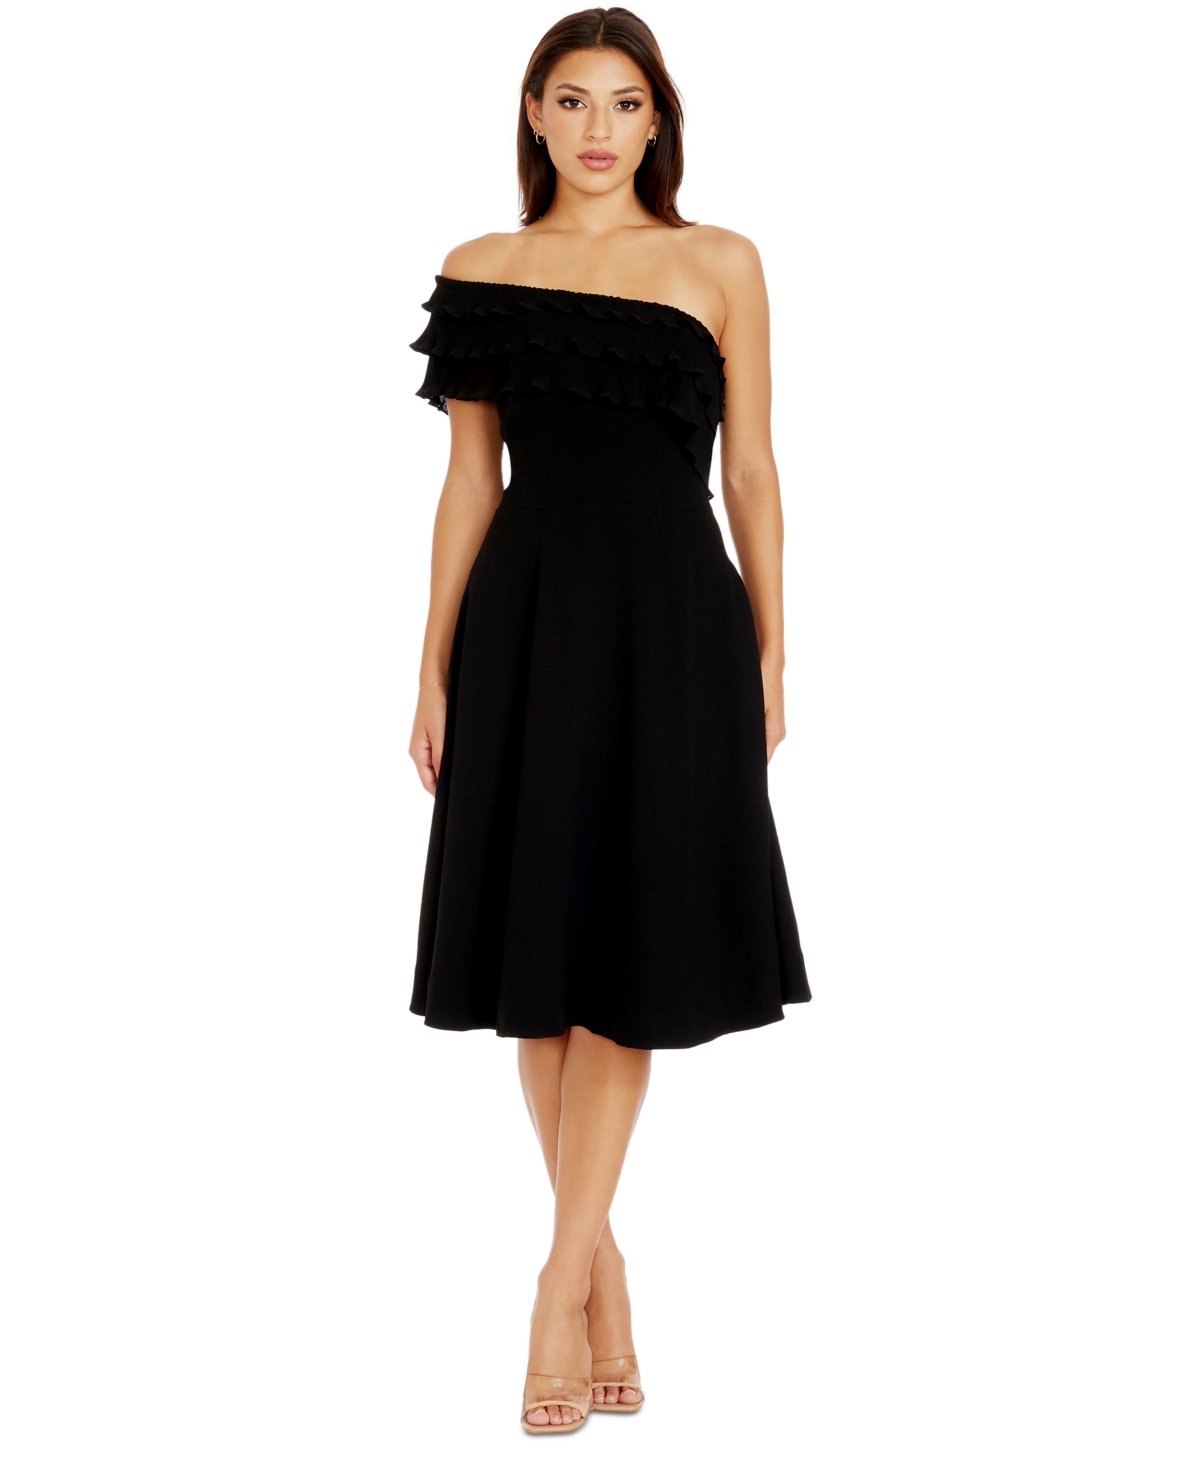 Women's Kristy One-Shoulder Ruffle Dress - Black